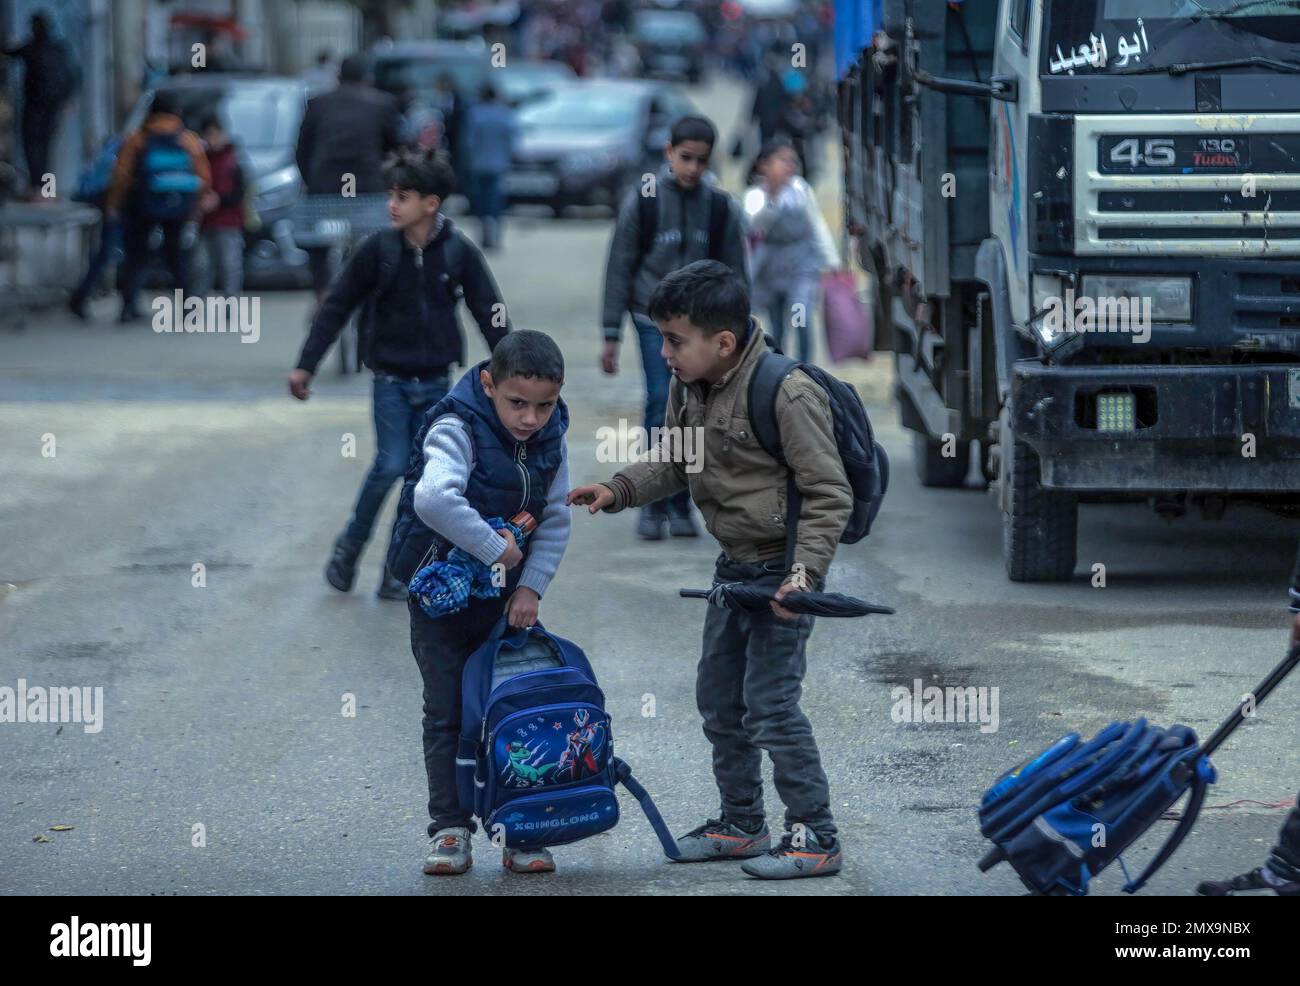 Les étudiants palestiniens qui sortent de l'école rentrent chez eux par mauvais temps dans la ville de Gaza. Banque D'Images